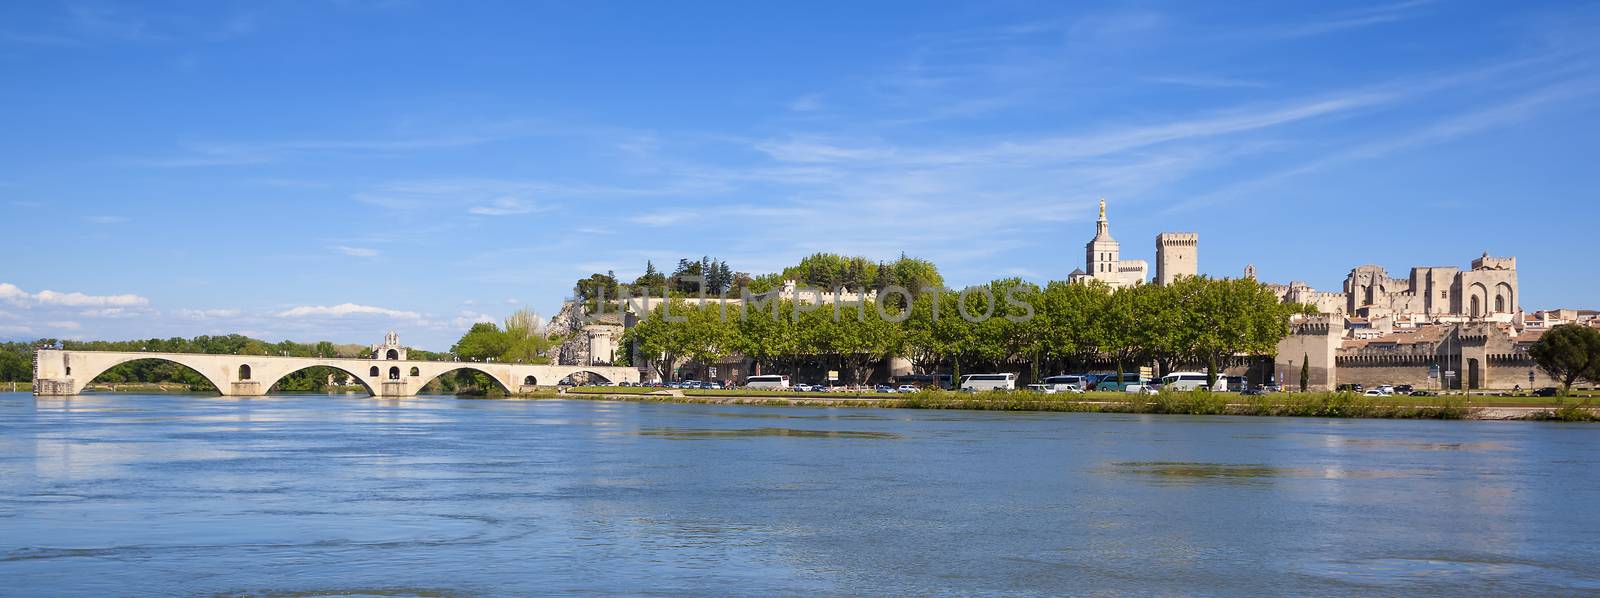 Panoramic view of Avignon Bridge by vwalakte